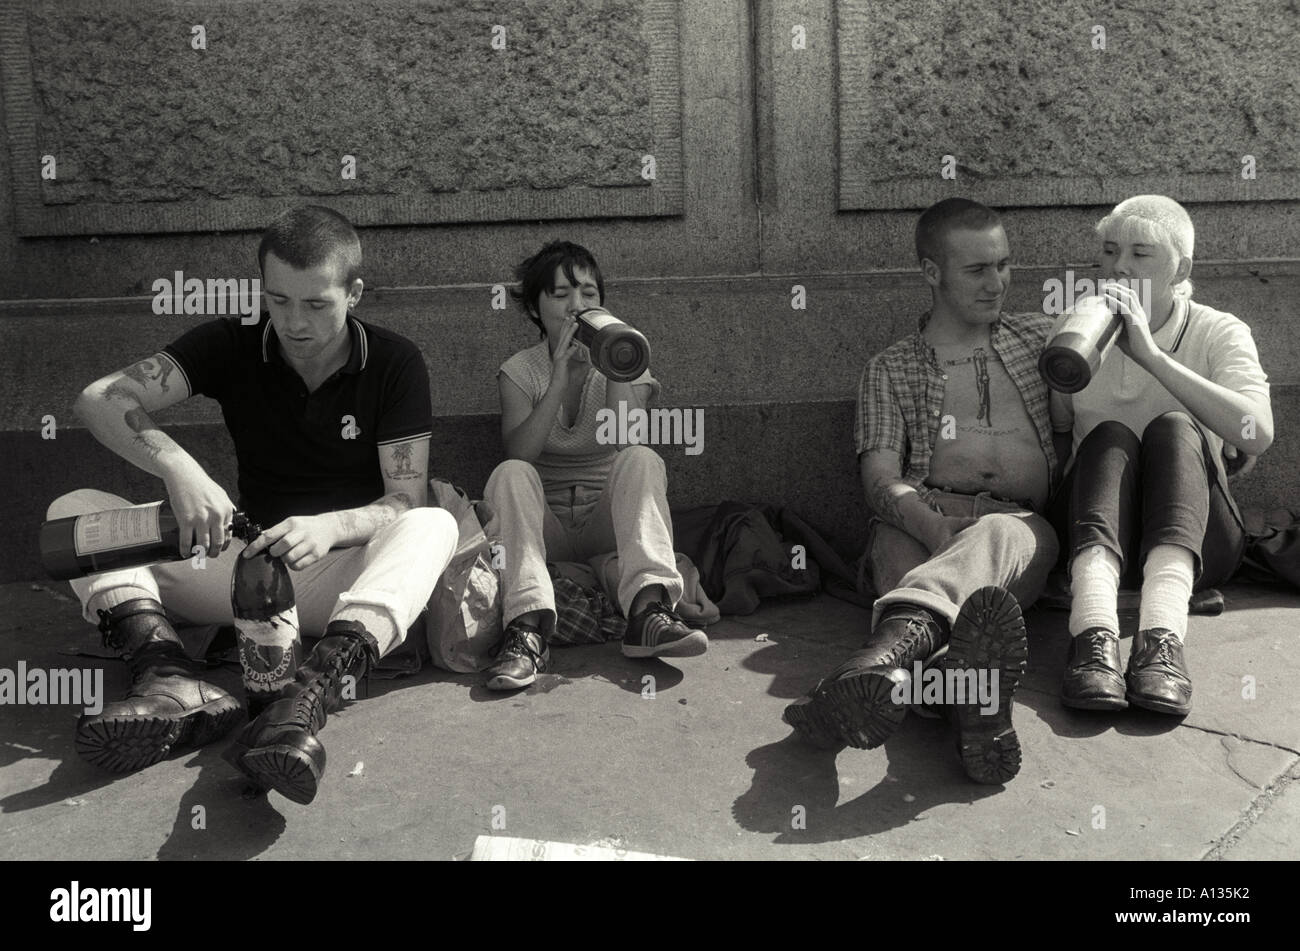 Les skinheads boivent et se ivrent Trafalgar Square Londres. Bovver Girls portait des vêtements qui imitent les vêtements pour garçons. 1982 1980 UK.HOMER SYKES Banque D'Images